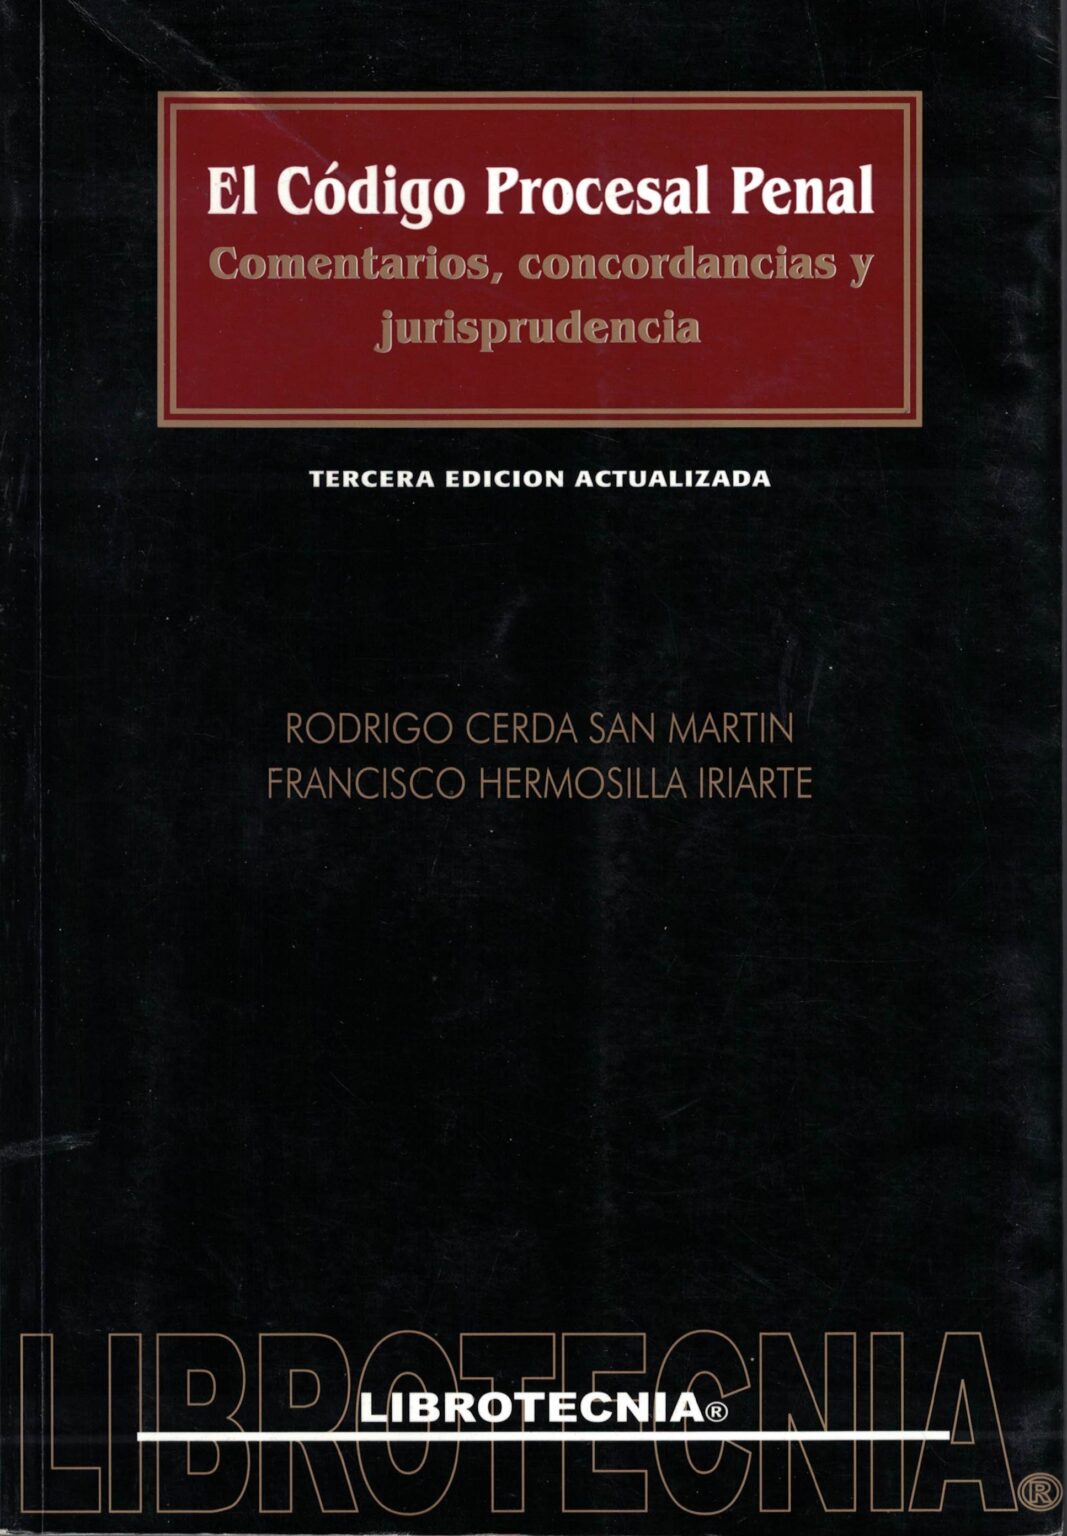 El Código Procesal Penal 3ra Edición Editorial Jurídica Congreso 1761